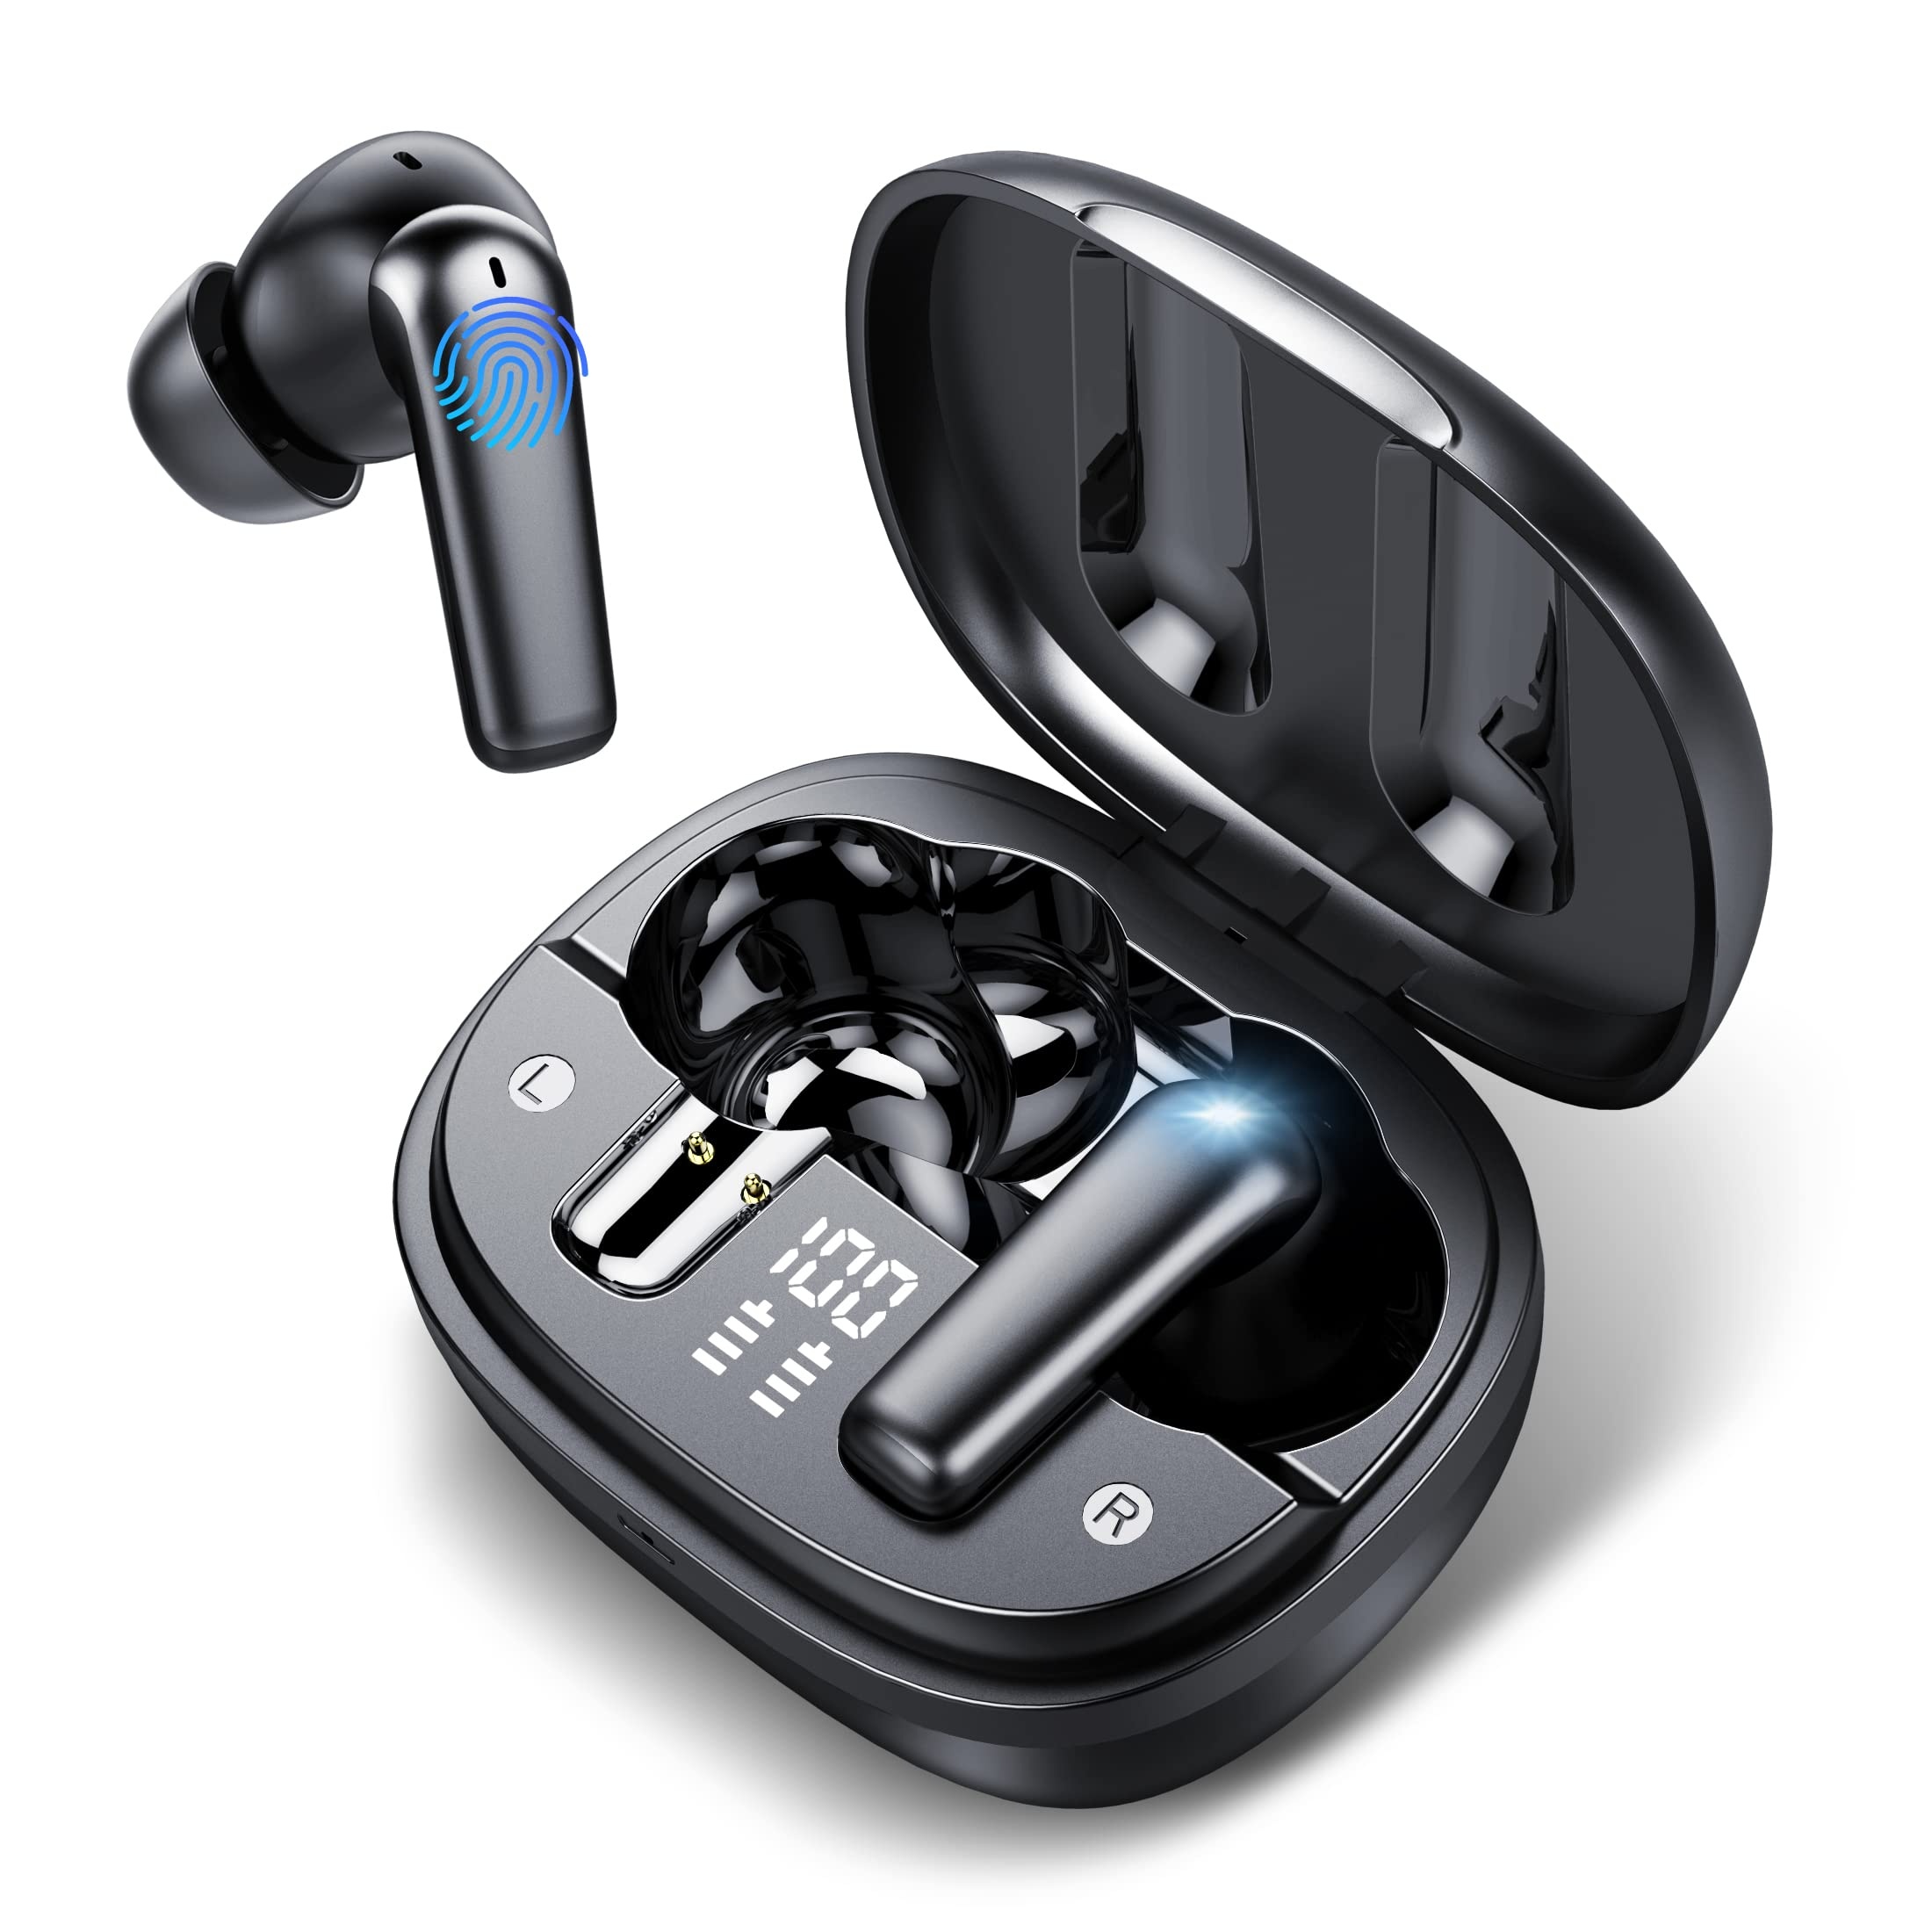 Auriculares Bluetooth inalámbricos, auriculares estéreo de alta fidelidad  inmersivos, nuevos auriculares de 48 horas, micrófono ENC, ganchos